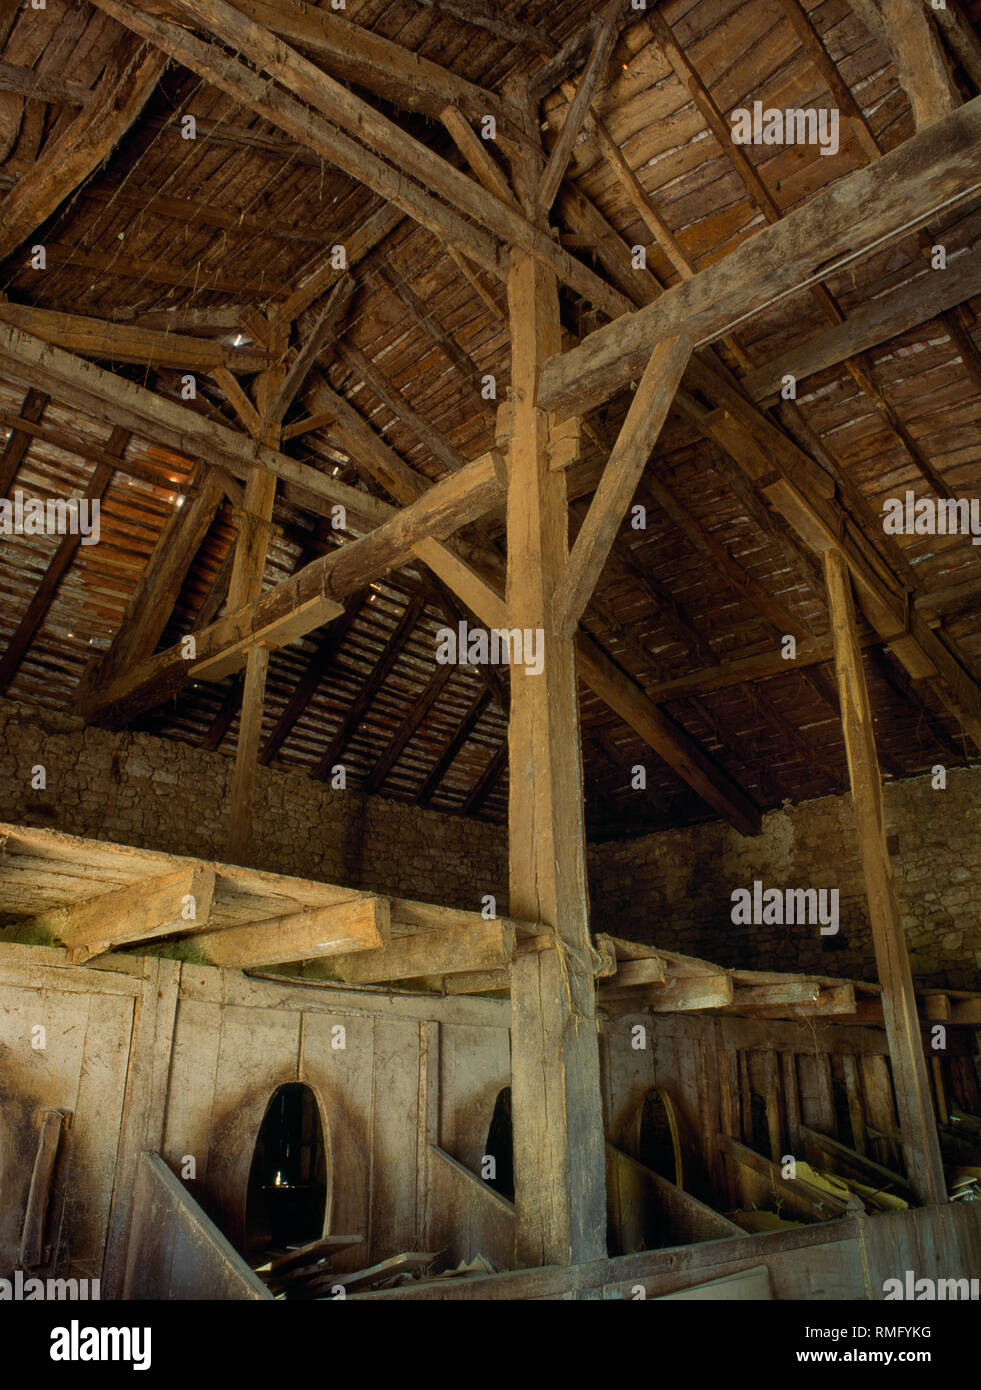 Le Duet aisled tradicional hacienda fuera St Vivien de Monségur, cerca de la Réole, Burdeos, Francia: techo, granero establos animales, piensos cajas y trastero. Foto de stock